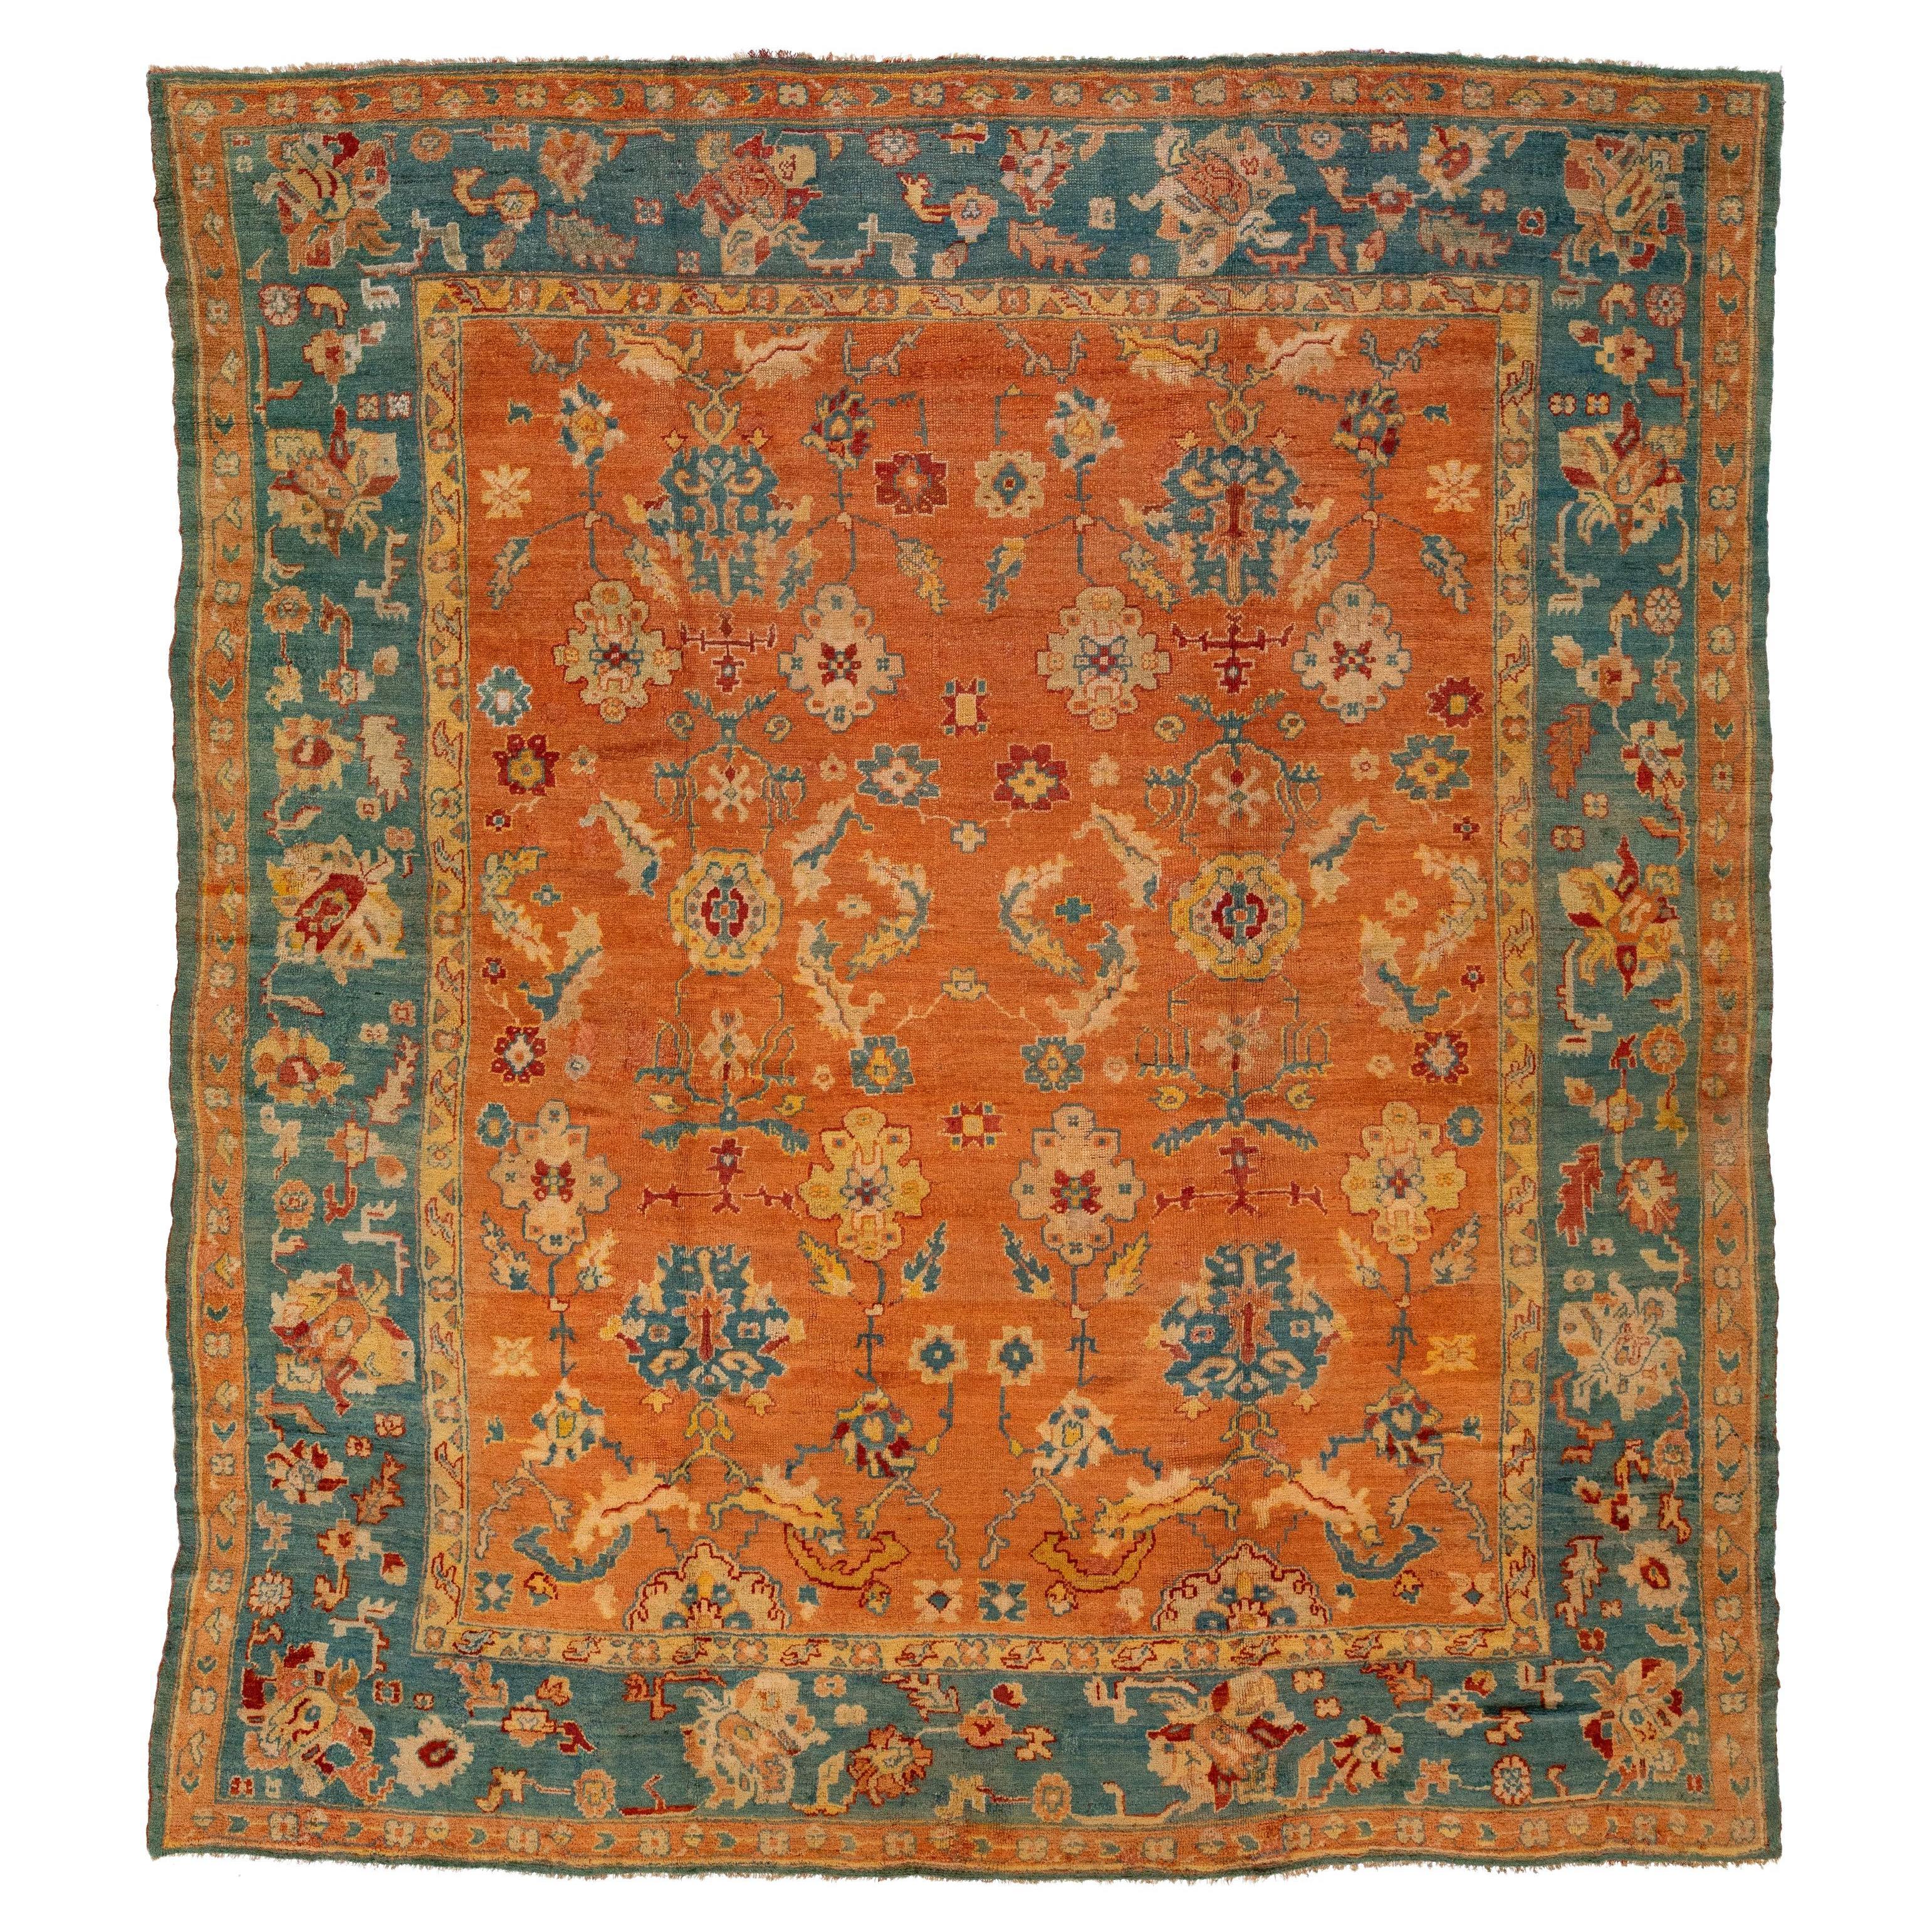 Tapis turc ancien en laine d'Oushak orange et bleu fabriqué à la main dans les années 1880